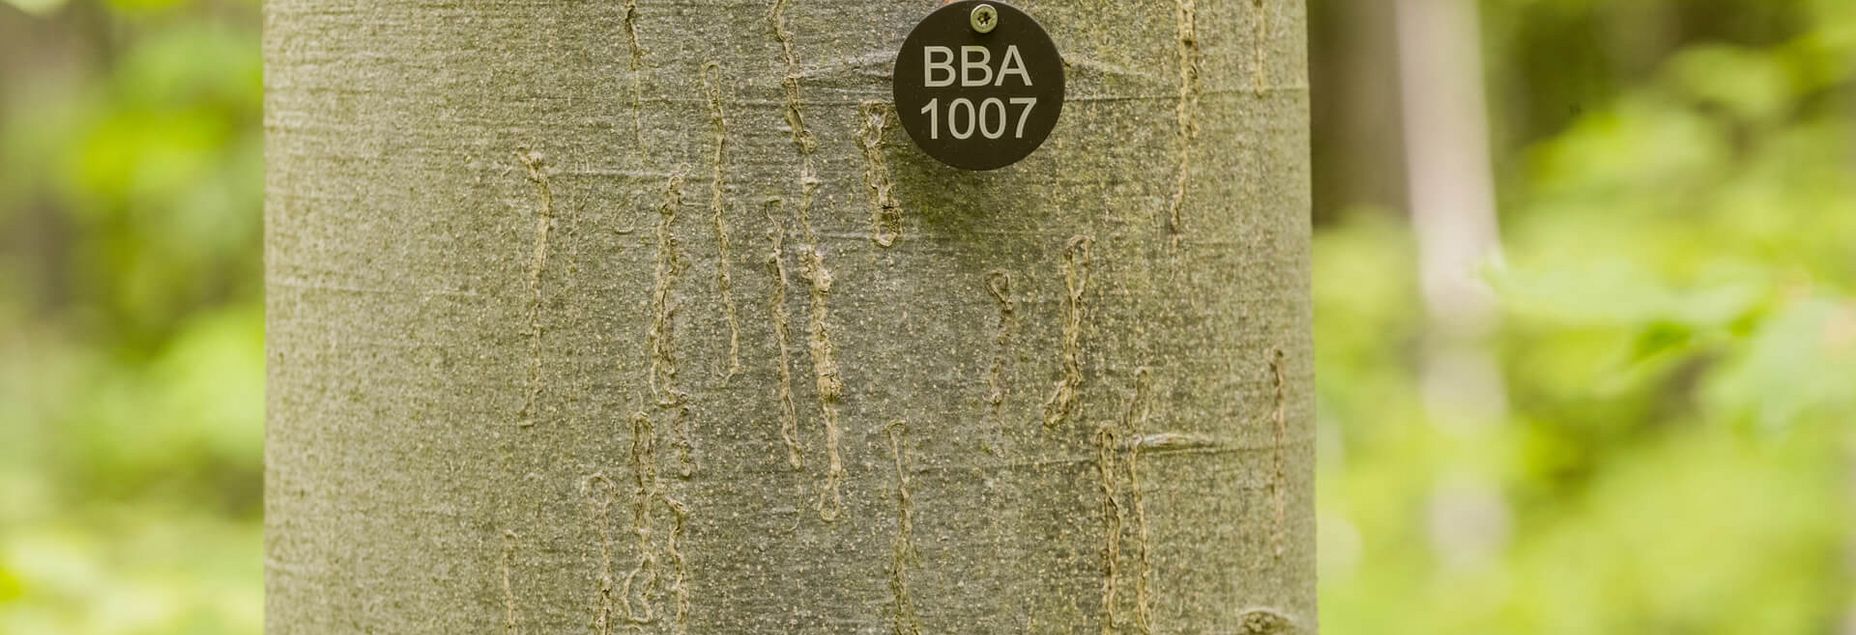 Baum BBA 1007 - Plakette